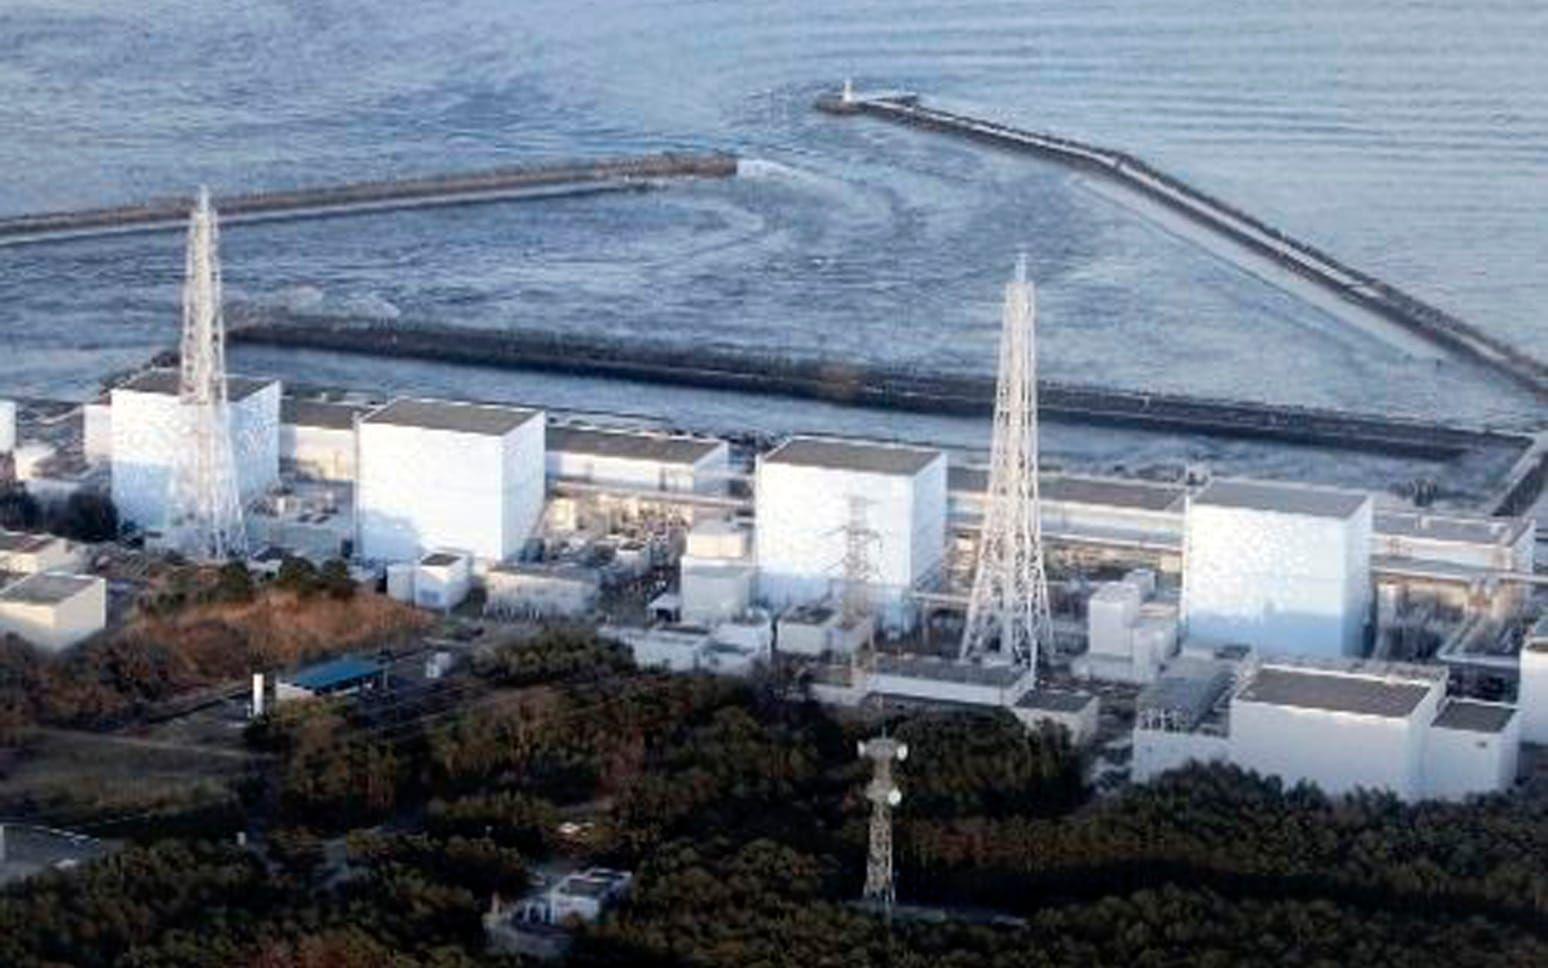 <strong>FUKUSHIMA.</strong>Naturkatastrofen i mars 2011 skadade fyra reaktorer vid kärnkraftverket Fukushima. Nu besöks haveriplatsen av turister varje år. Vid besöket måste turisterna bära skoskydd, ansiktsmask och bomullsvantar. Det är dock fortfarande för farligt att besöka reaktor 1-3 som drabbades av härdsmältor. Foto: TT
